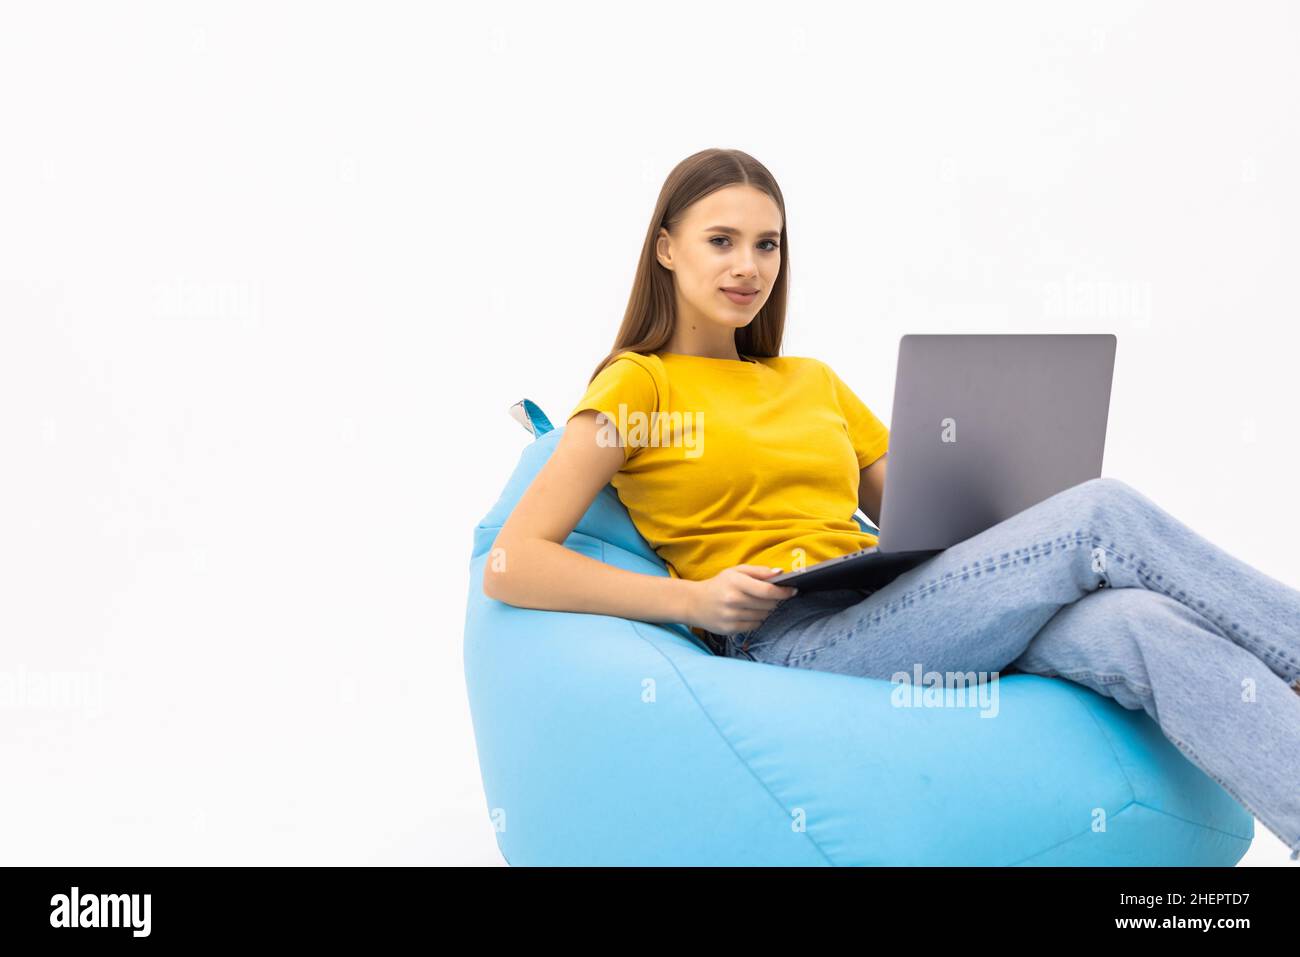 Junge Frau arbeitet an ihrem Computer Chat mit Start-up-Kunden sitzen große Tasche Lounge Stuhl tragen lässige Kleidung über weißen Hintergrund Stockfoto